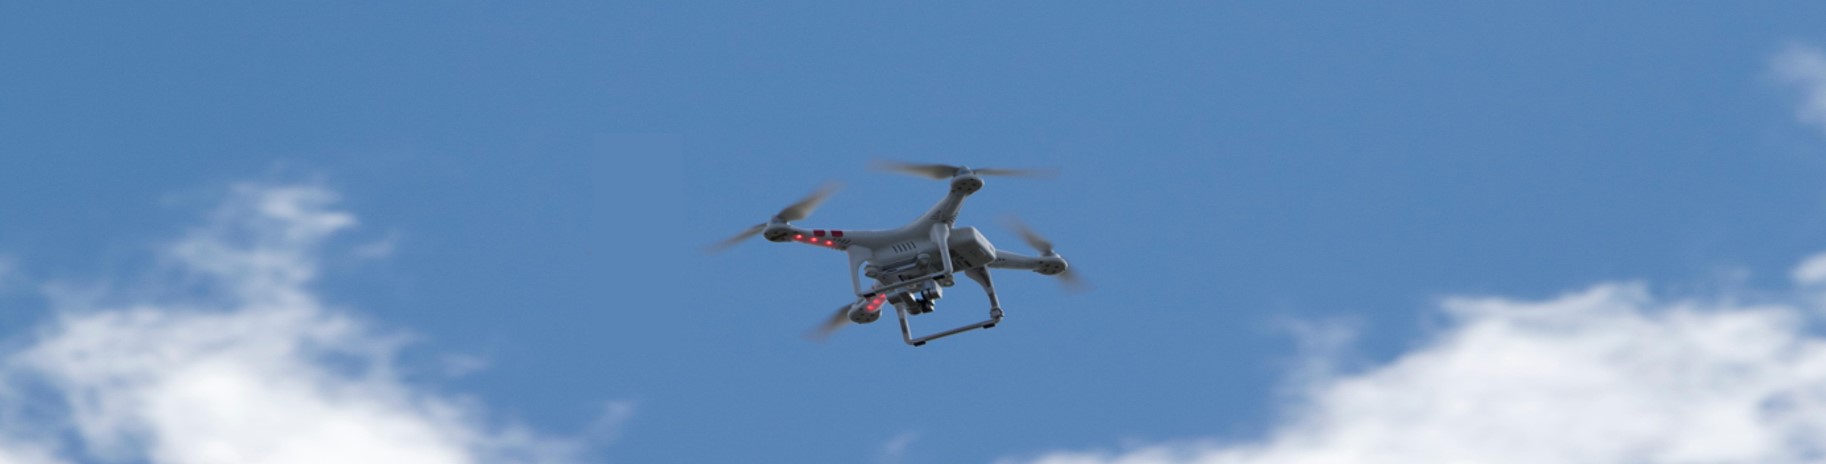 Sicher fliegen – Tipps für alle Drohnenpiloten: Was es zu beachten gilt.